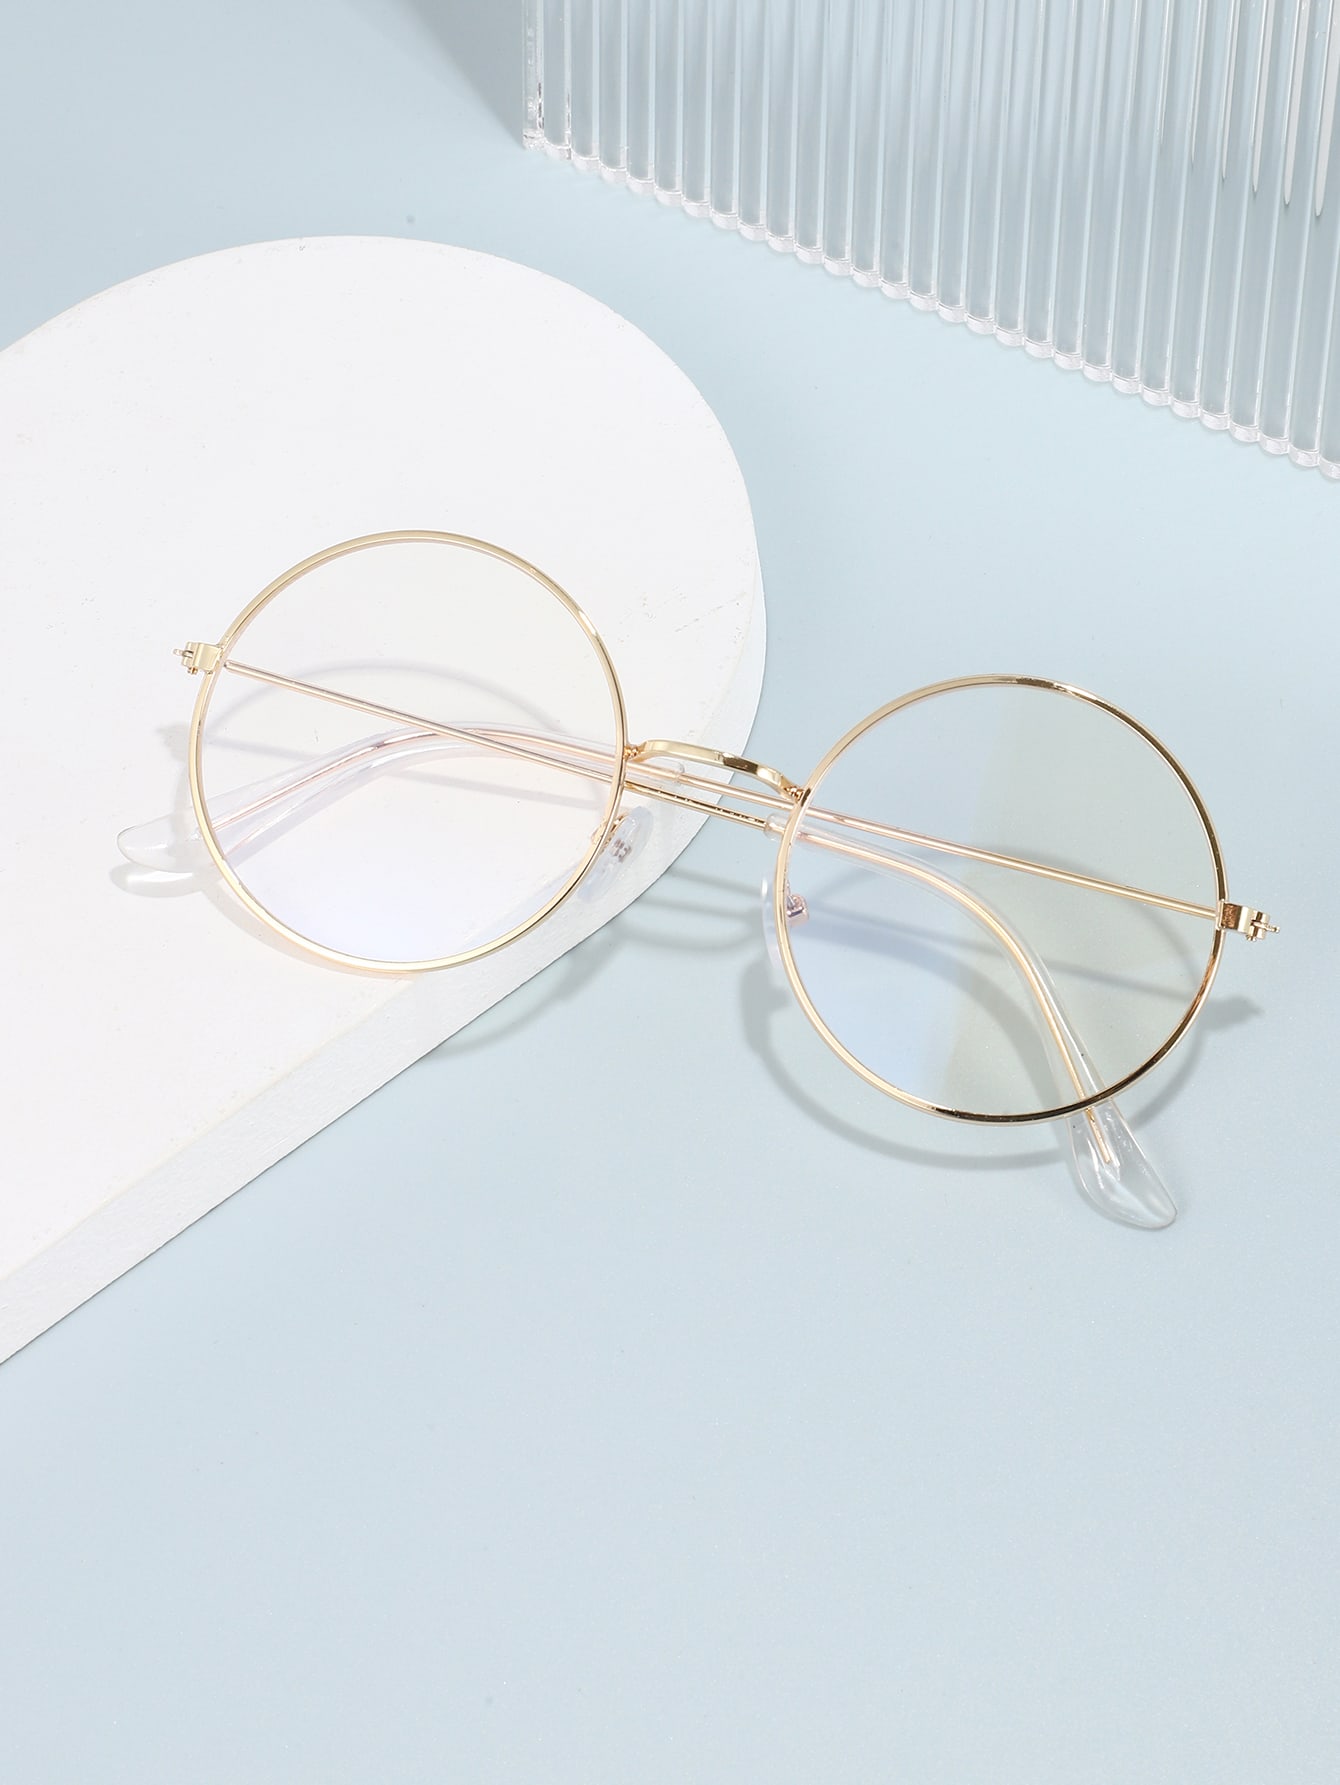 1шт металлические круглые простые очки с защитой от синих лучей